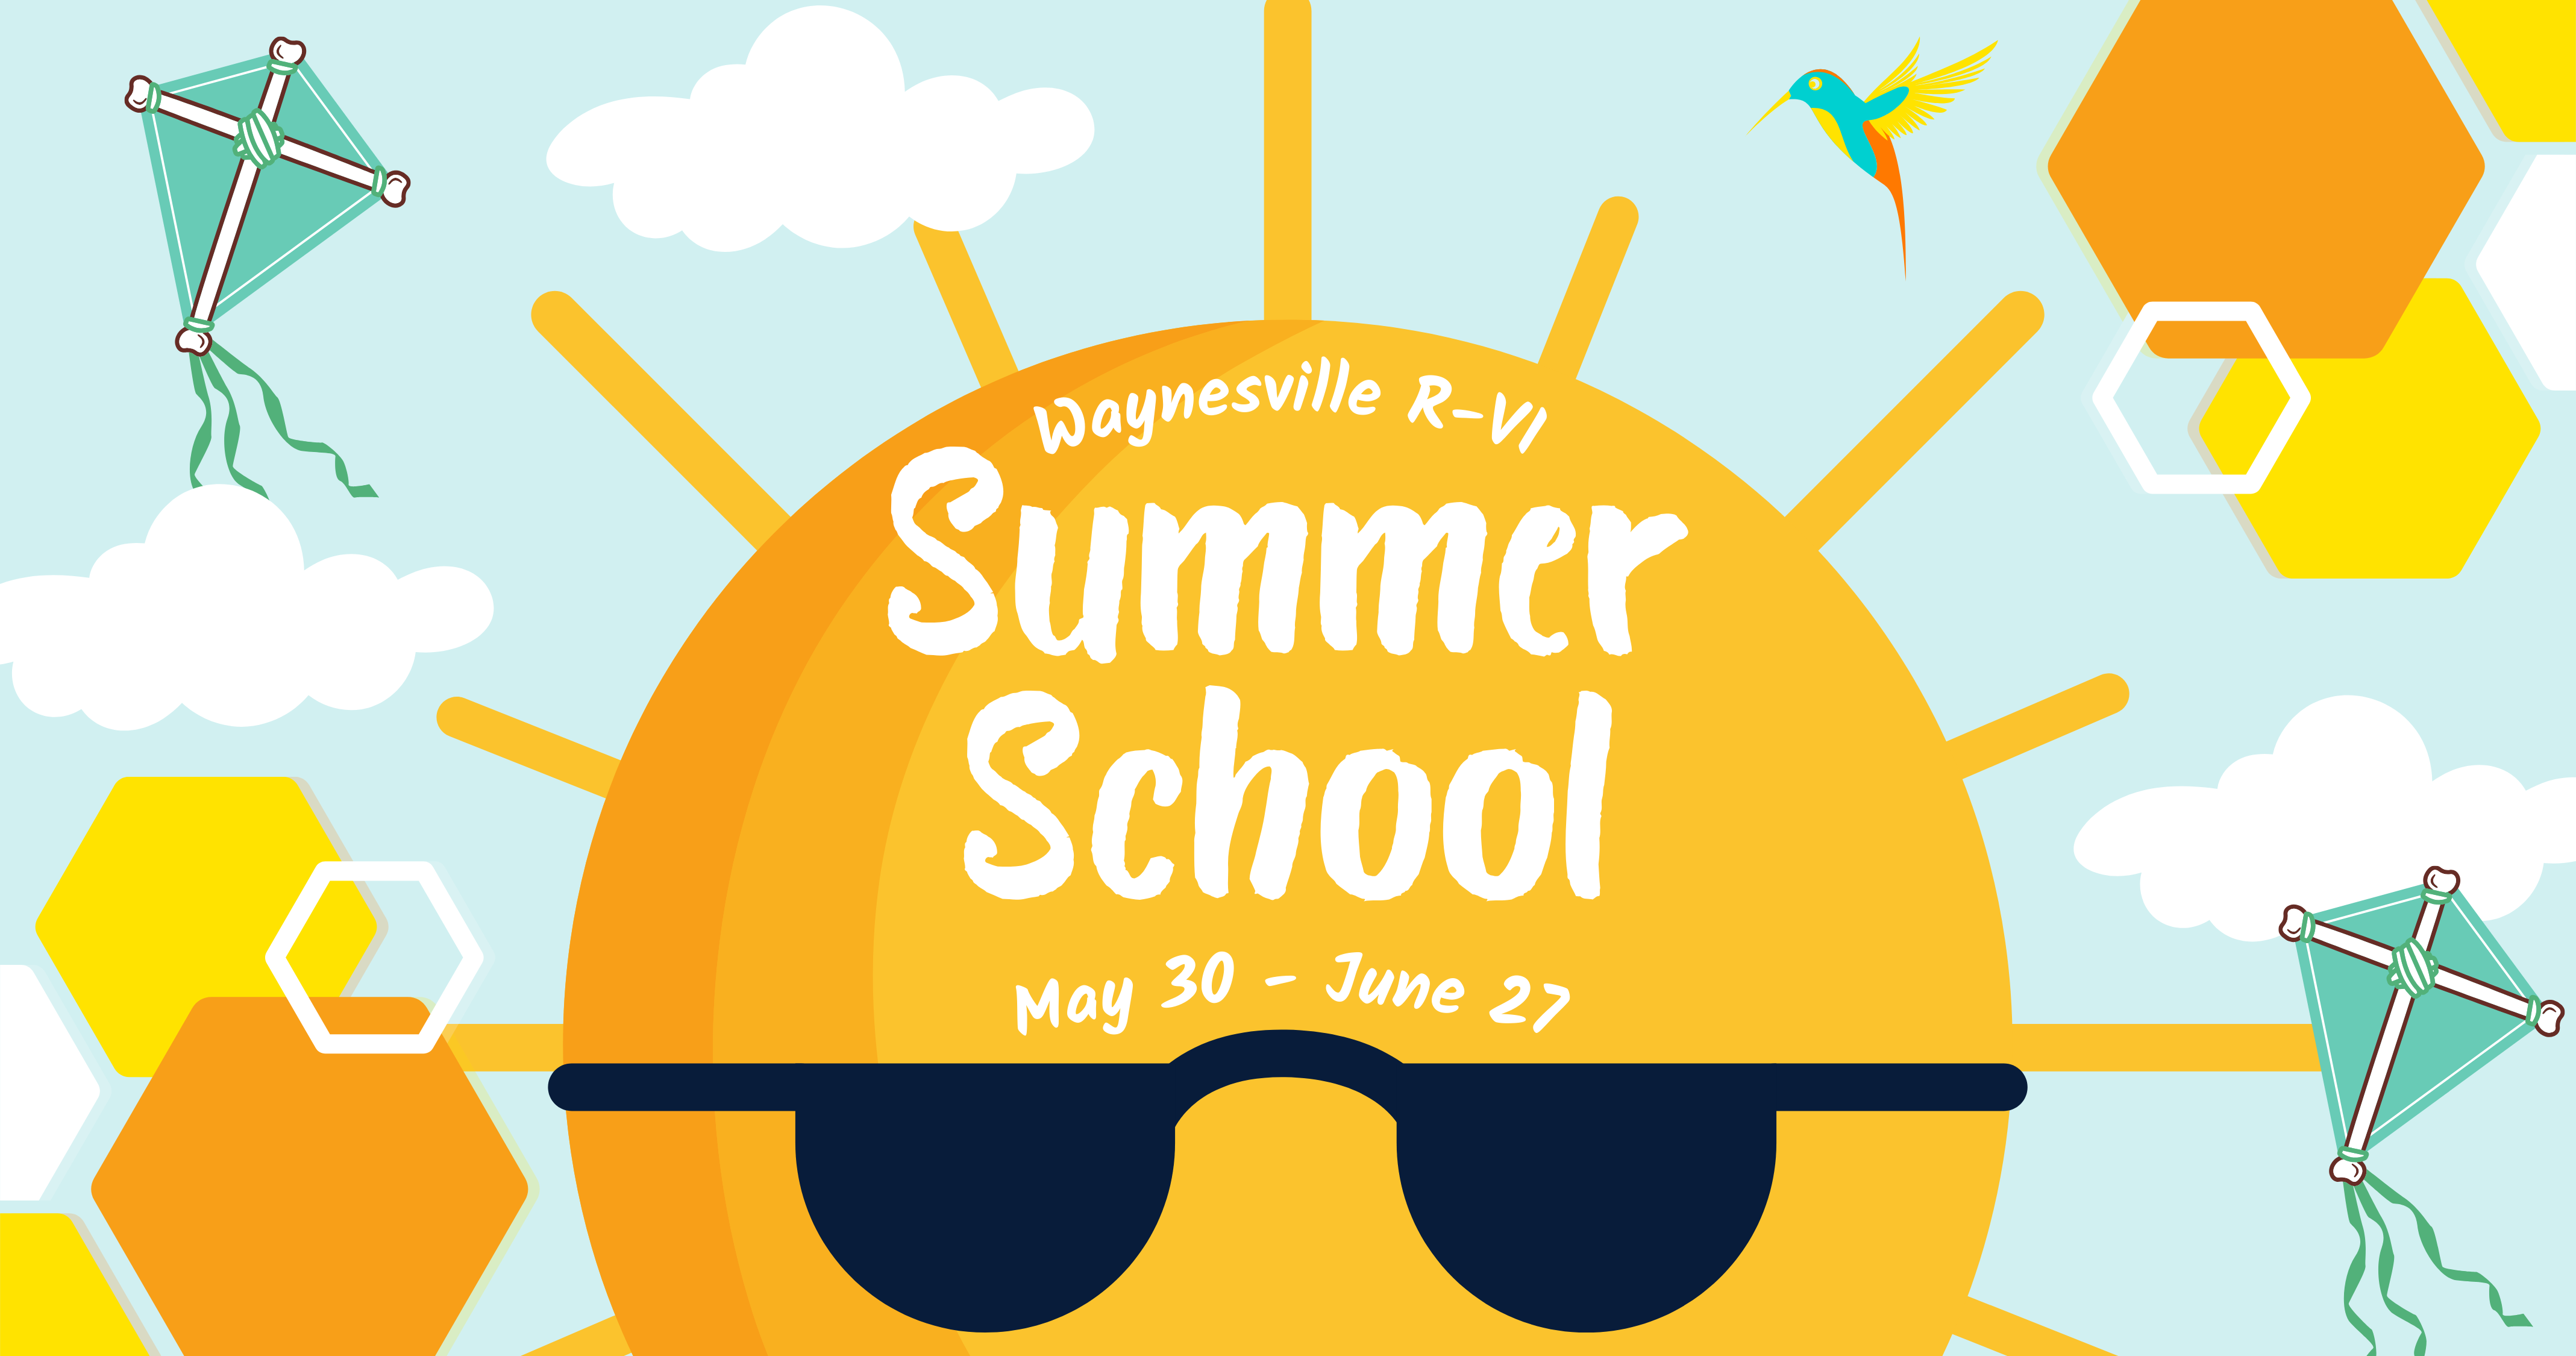 Summer School is May 30- June 27